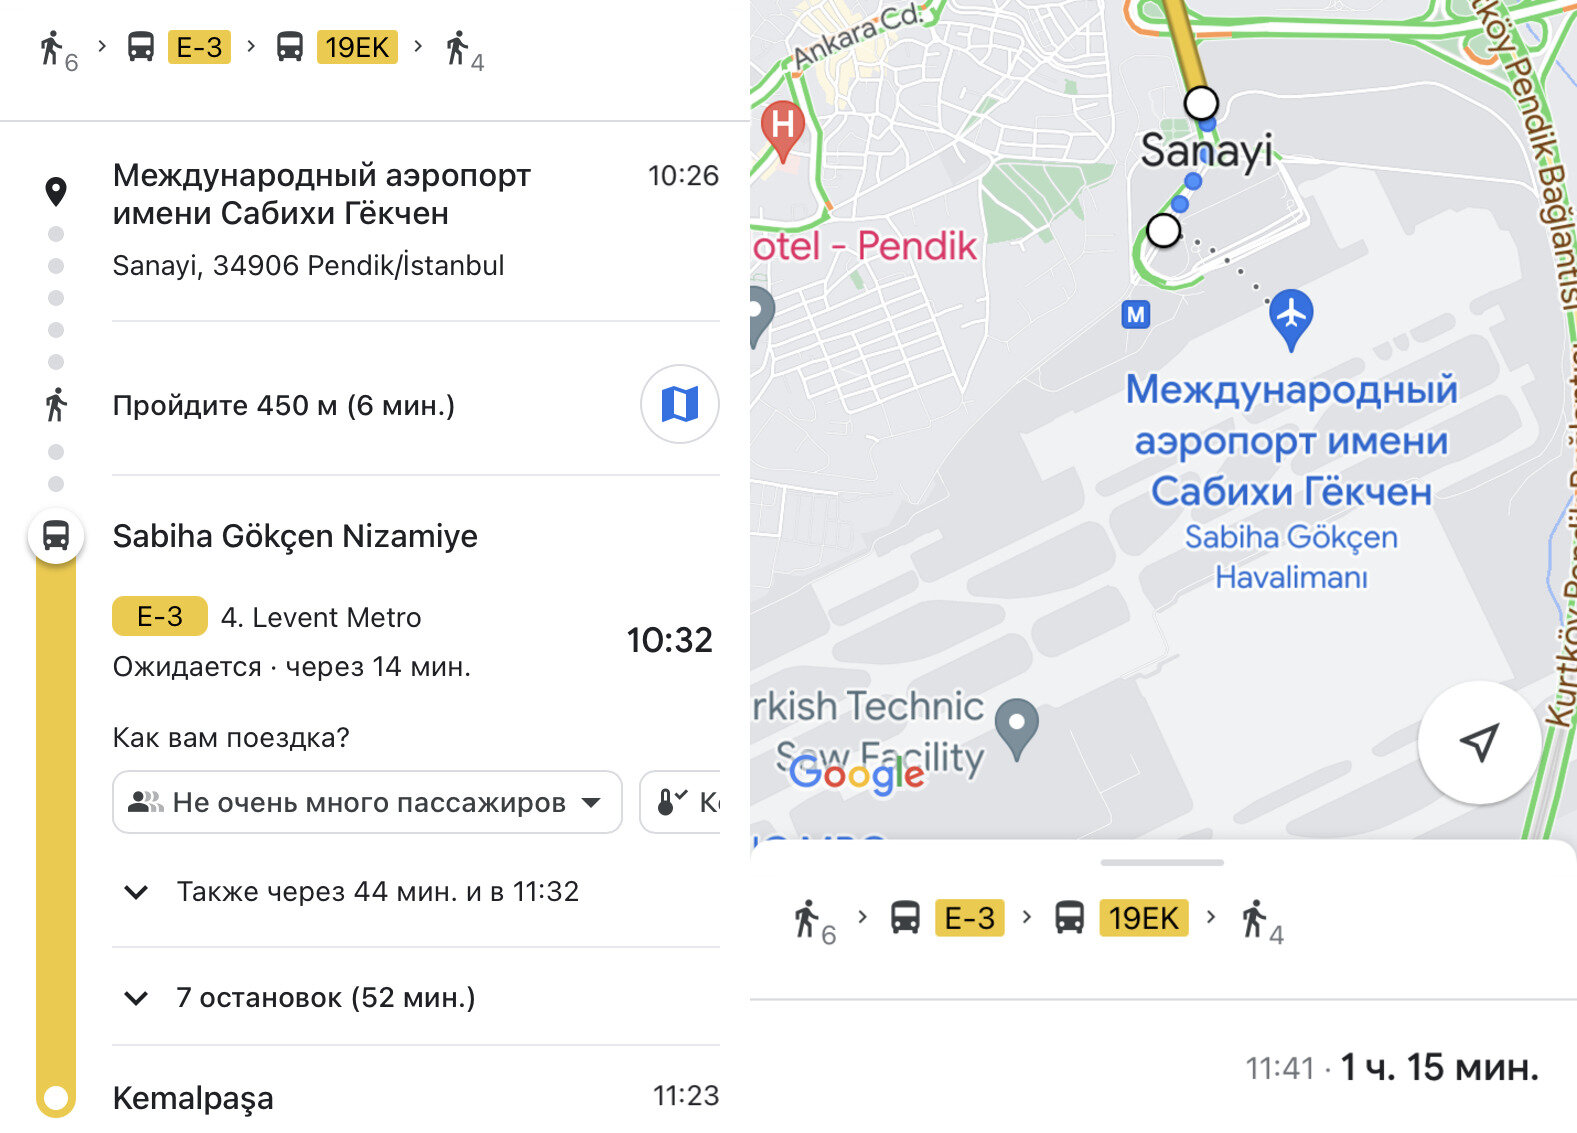 Карты Google Maps показывают не только маршруты автобусов, но и их расписание
и загруженность
